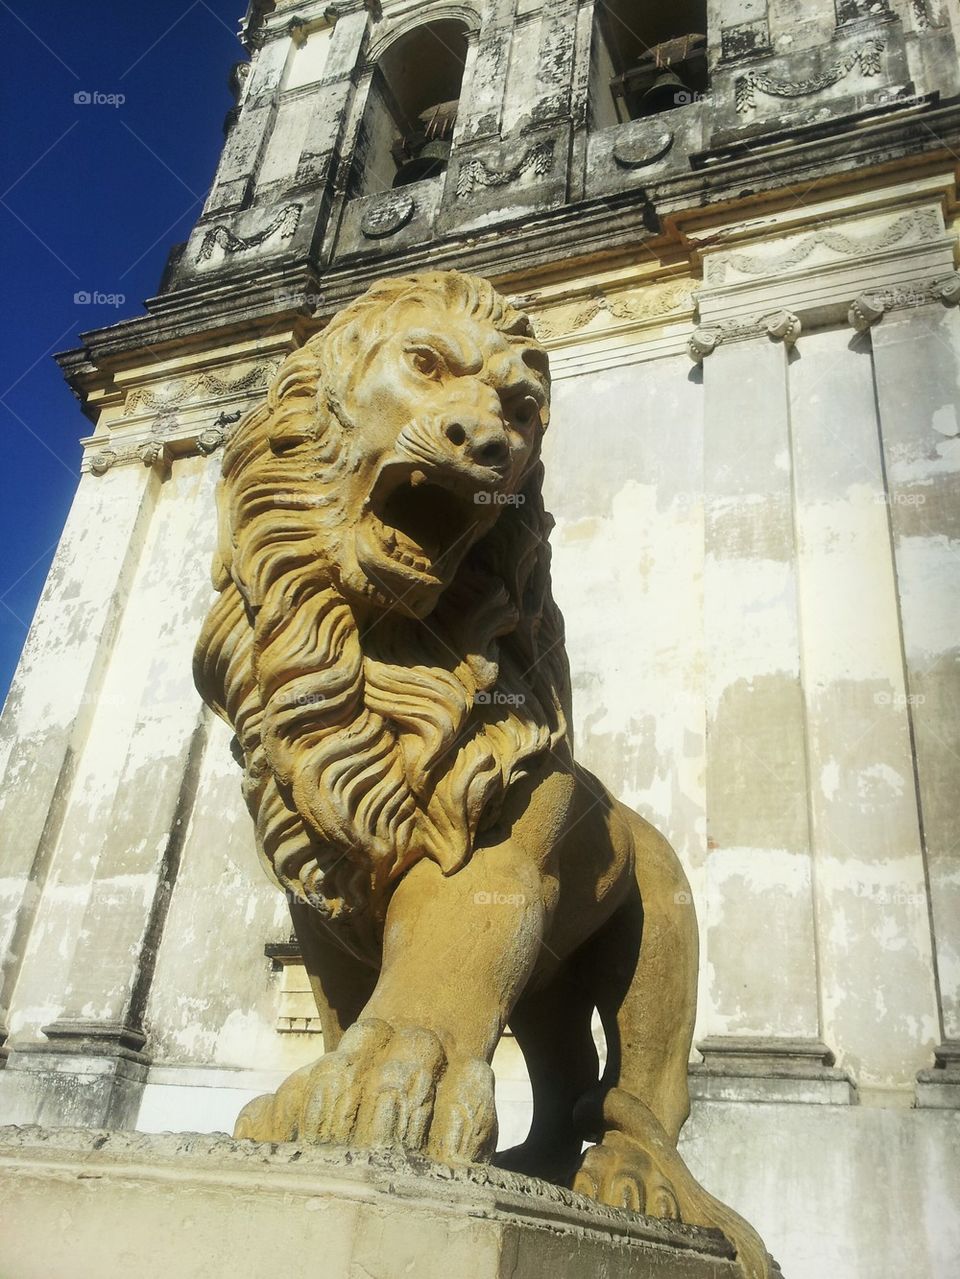 Lion of León